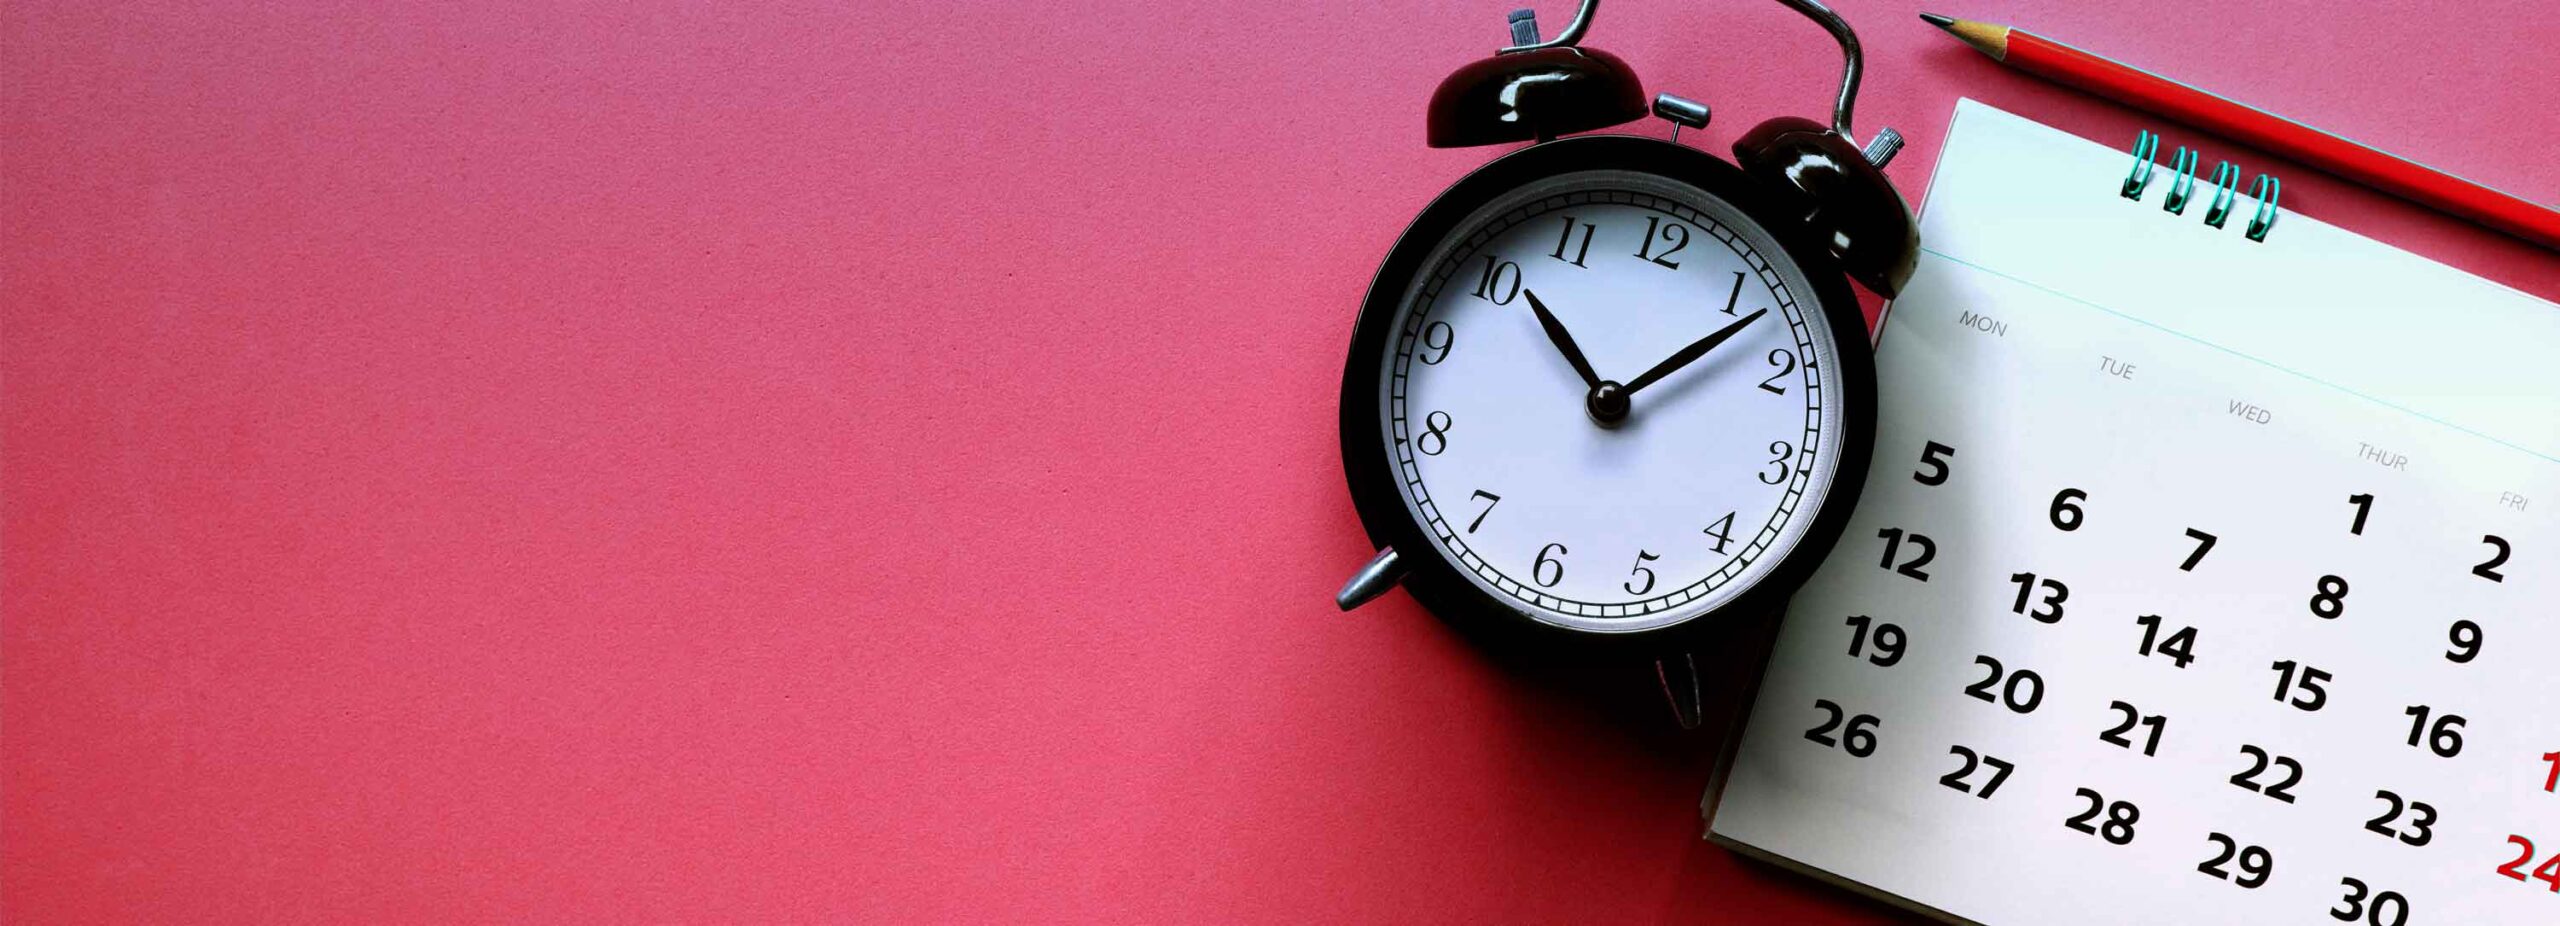 horloge et calendrier pour symboliser la durée de la garantie constructeur